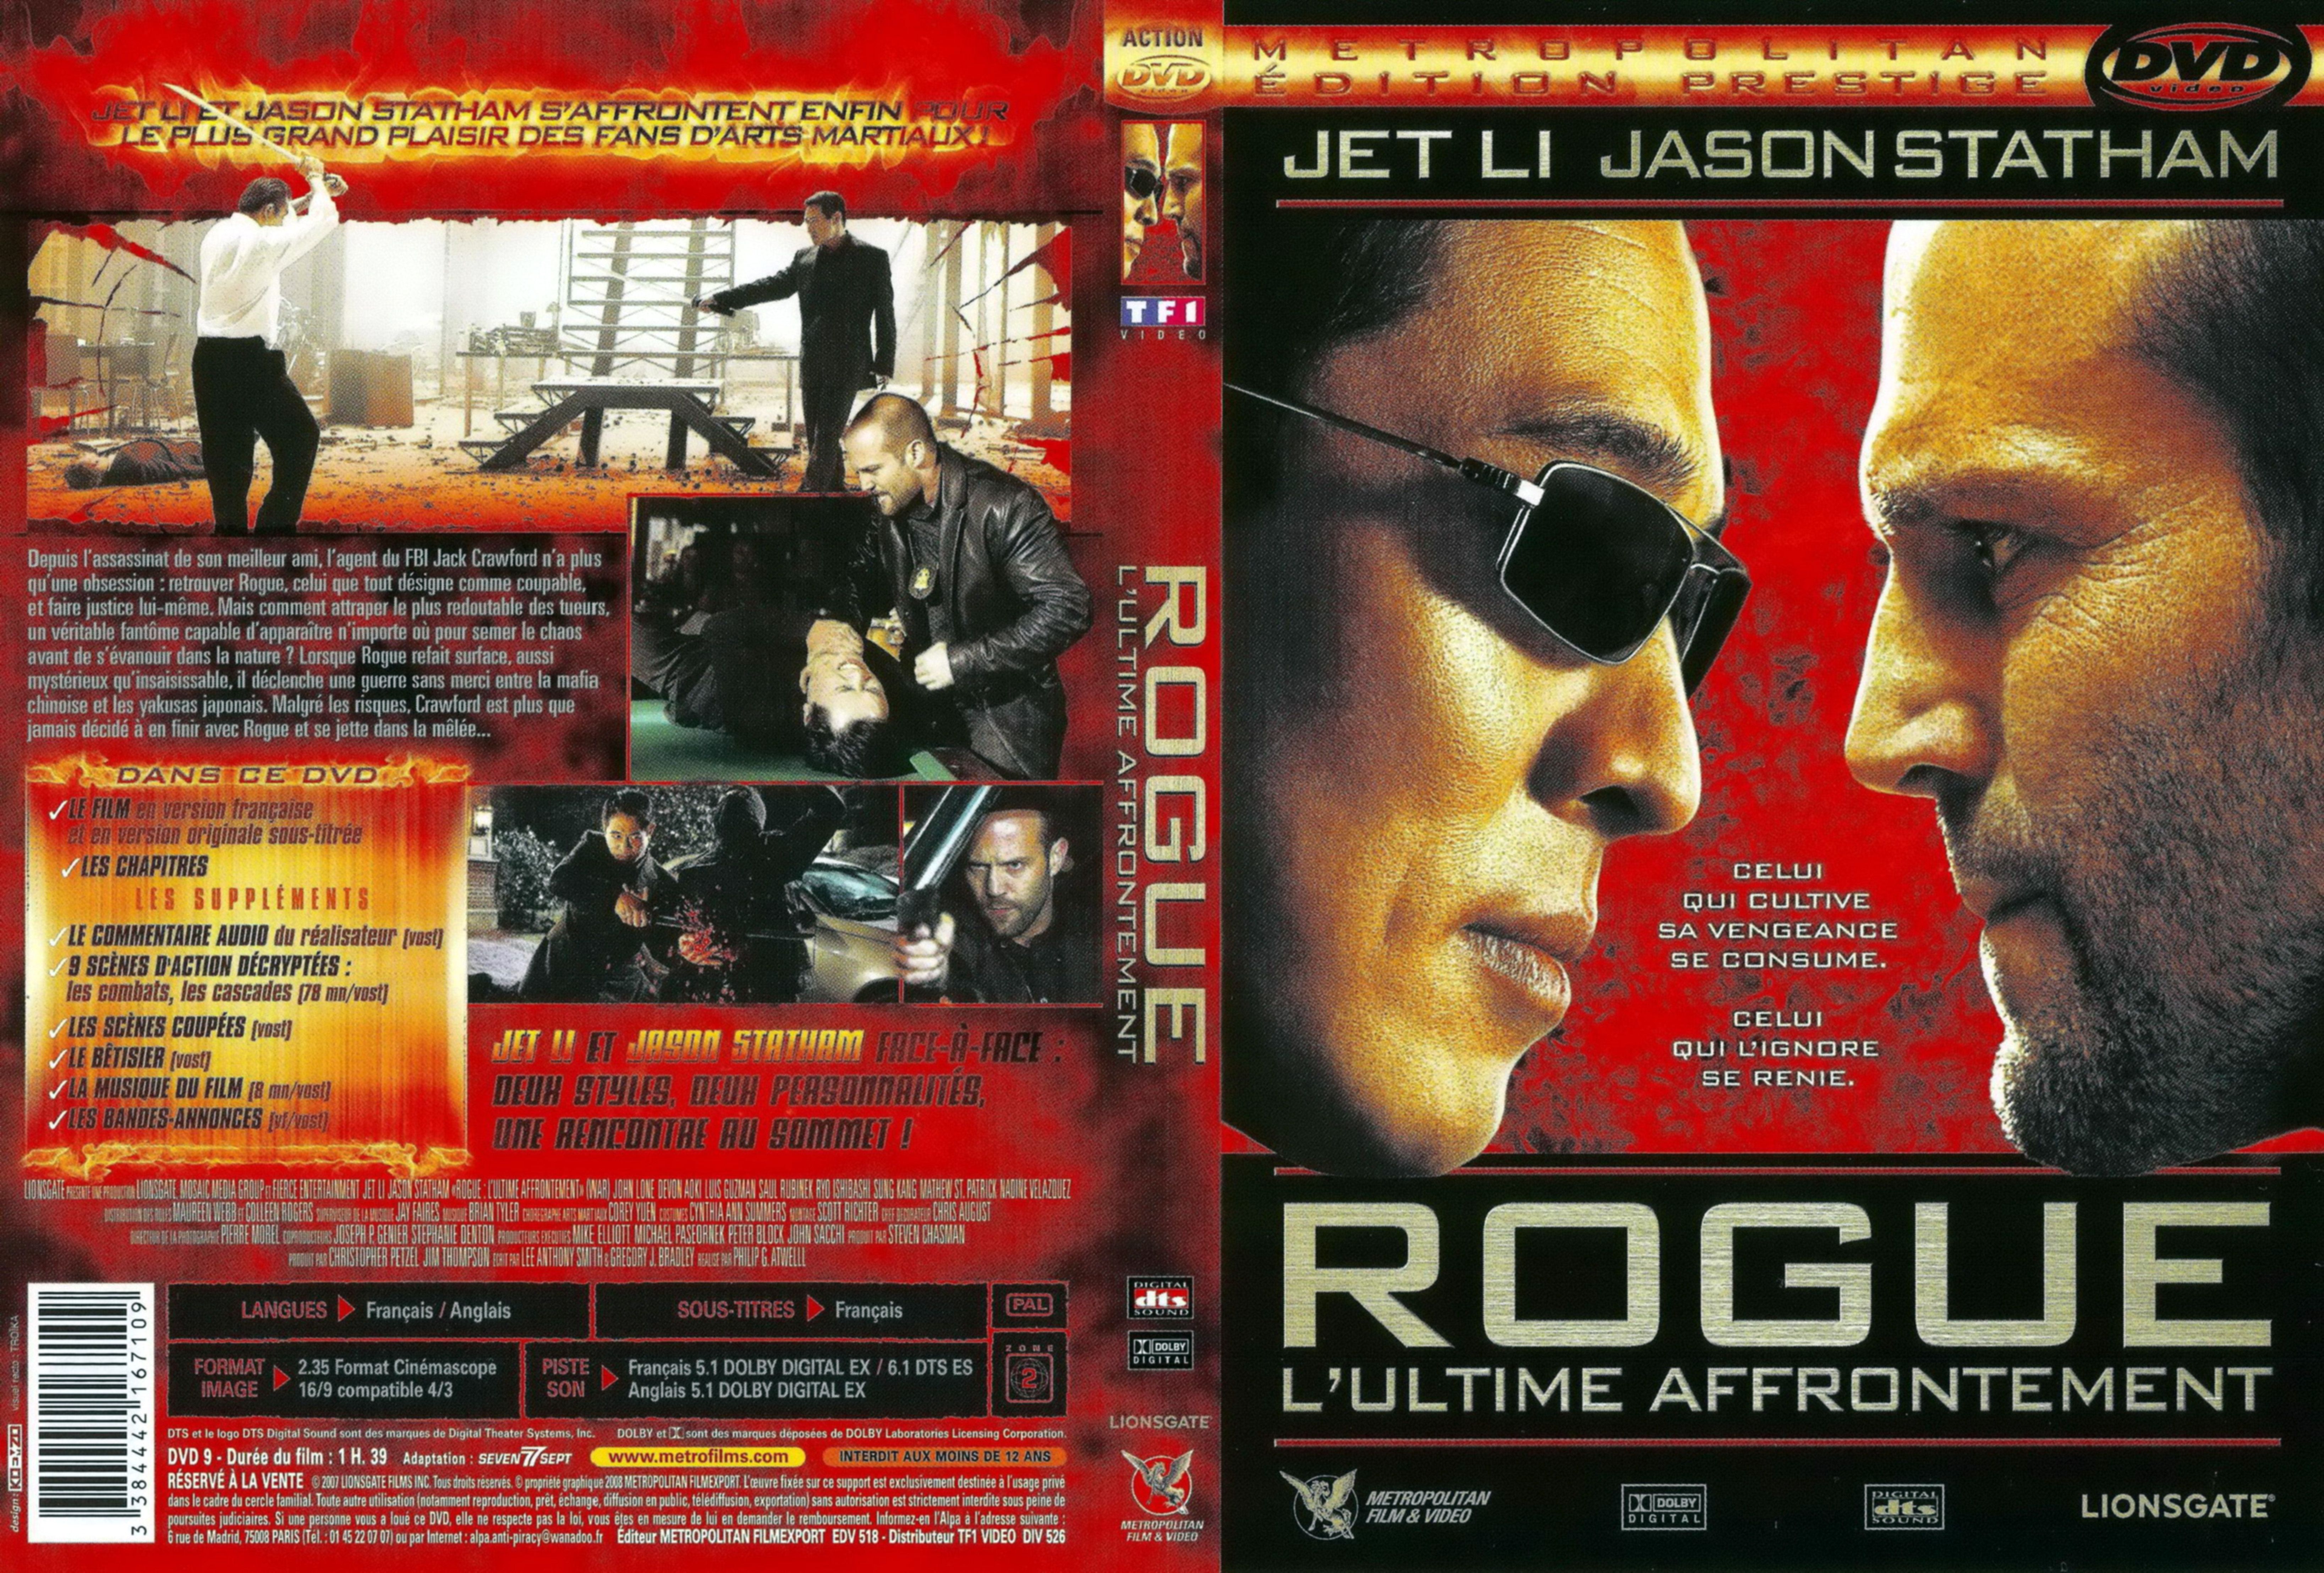 Jaquette DVD Rogue v2